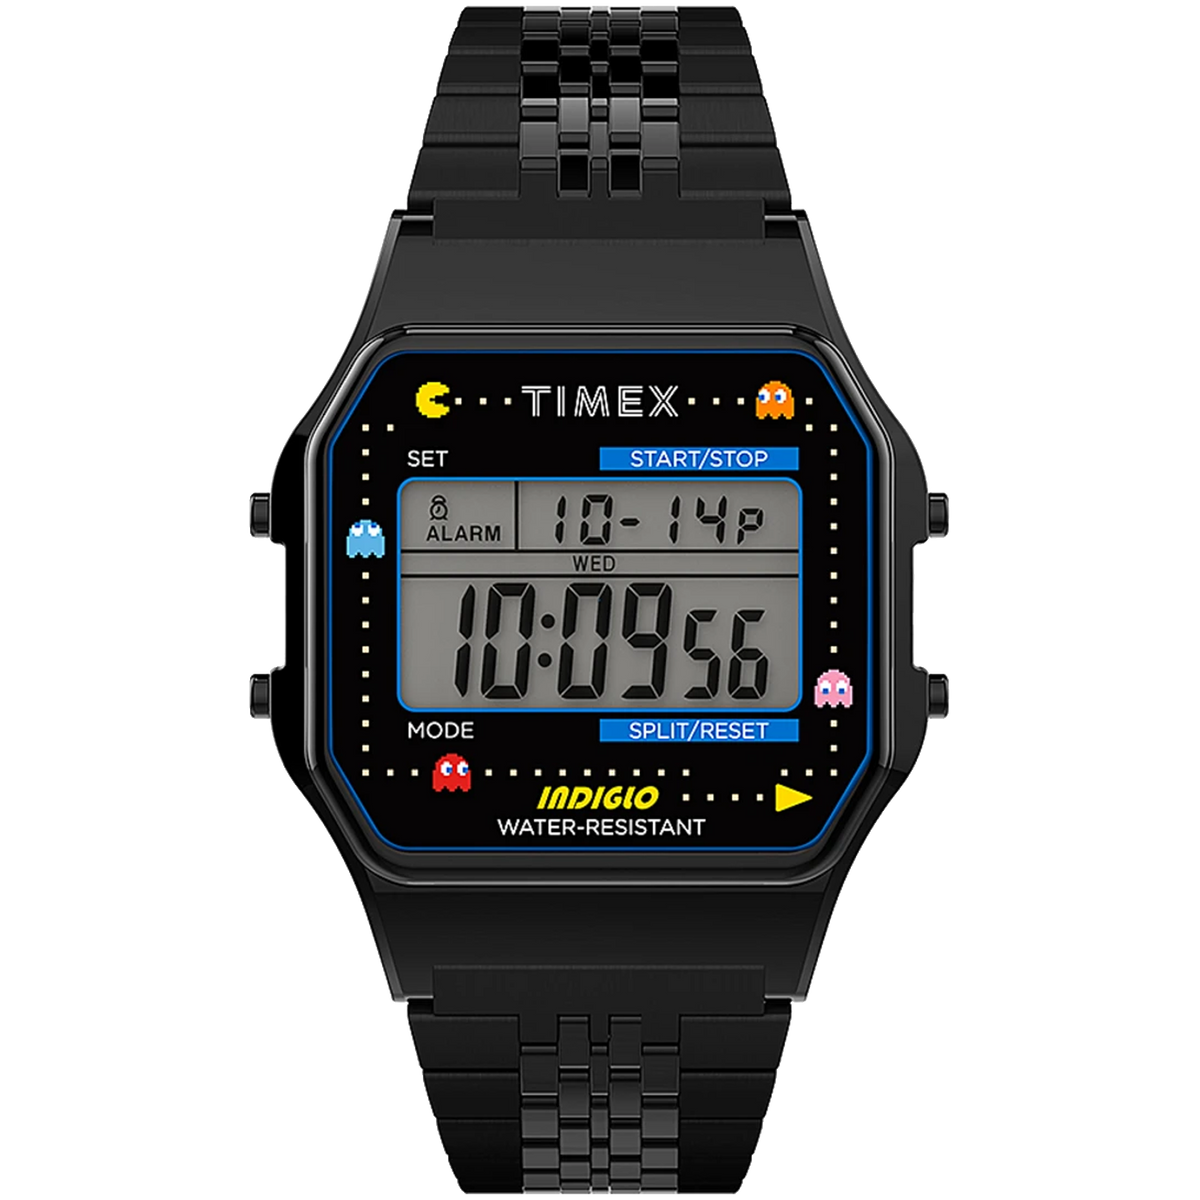 Timex T80 x Pac-Man 34mm - Black